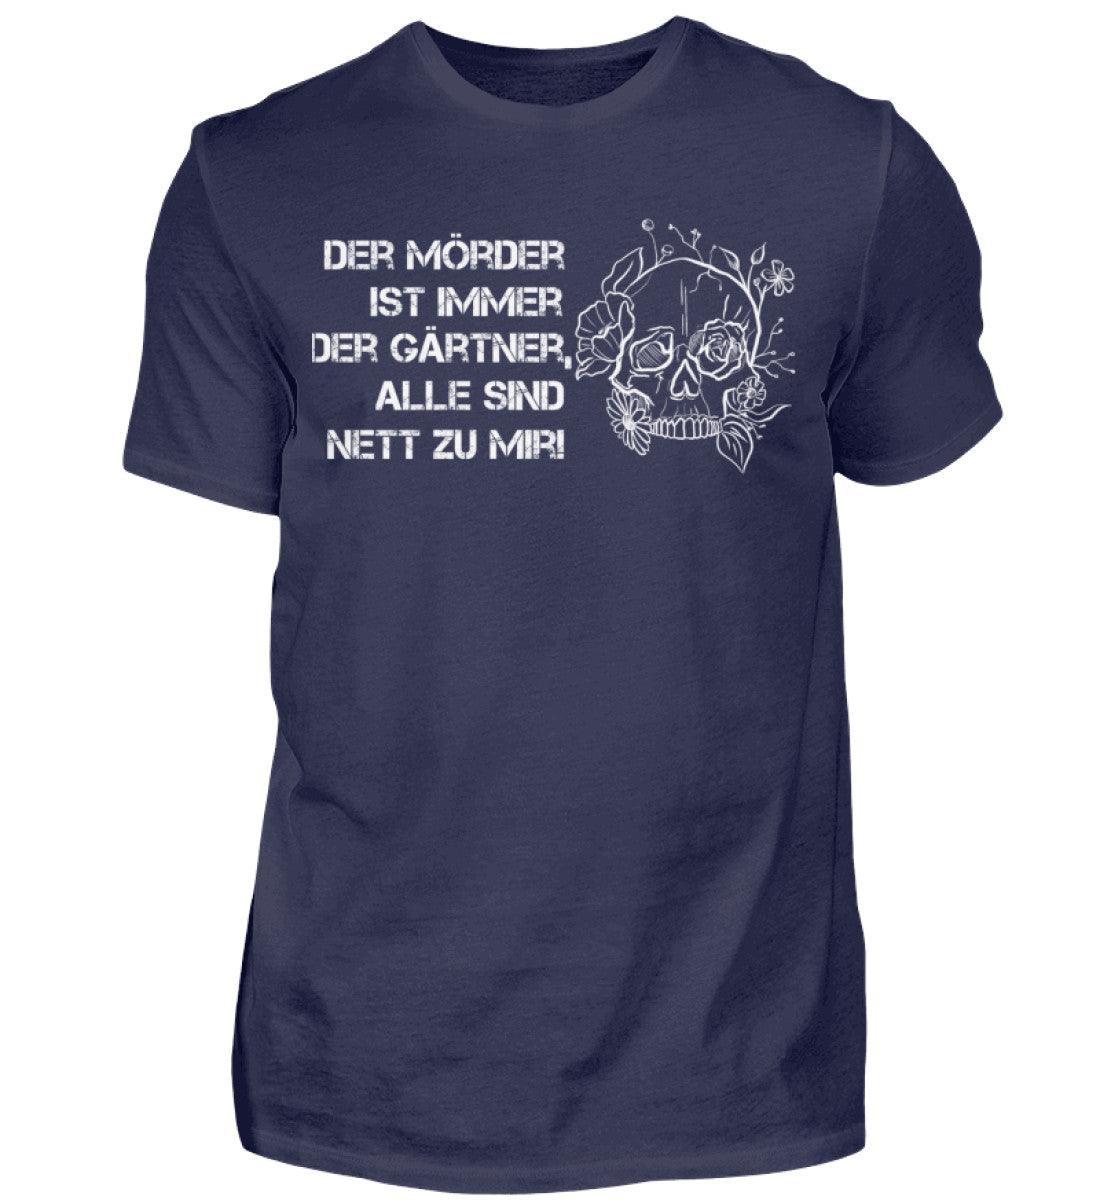 Der Mörder ist immer der Gärtner - Unisex Shirt - Navy